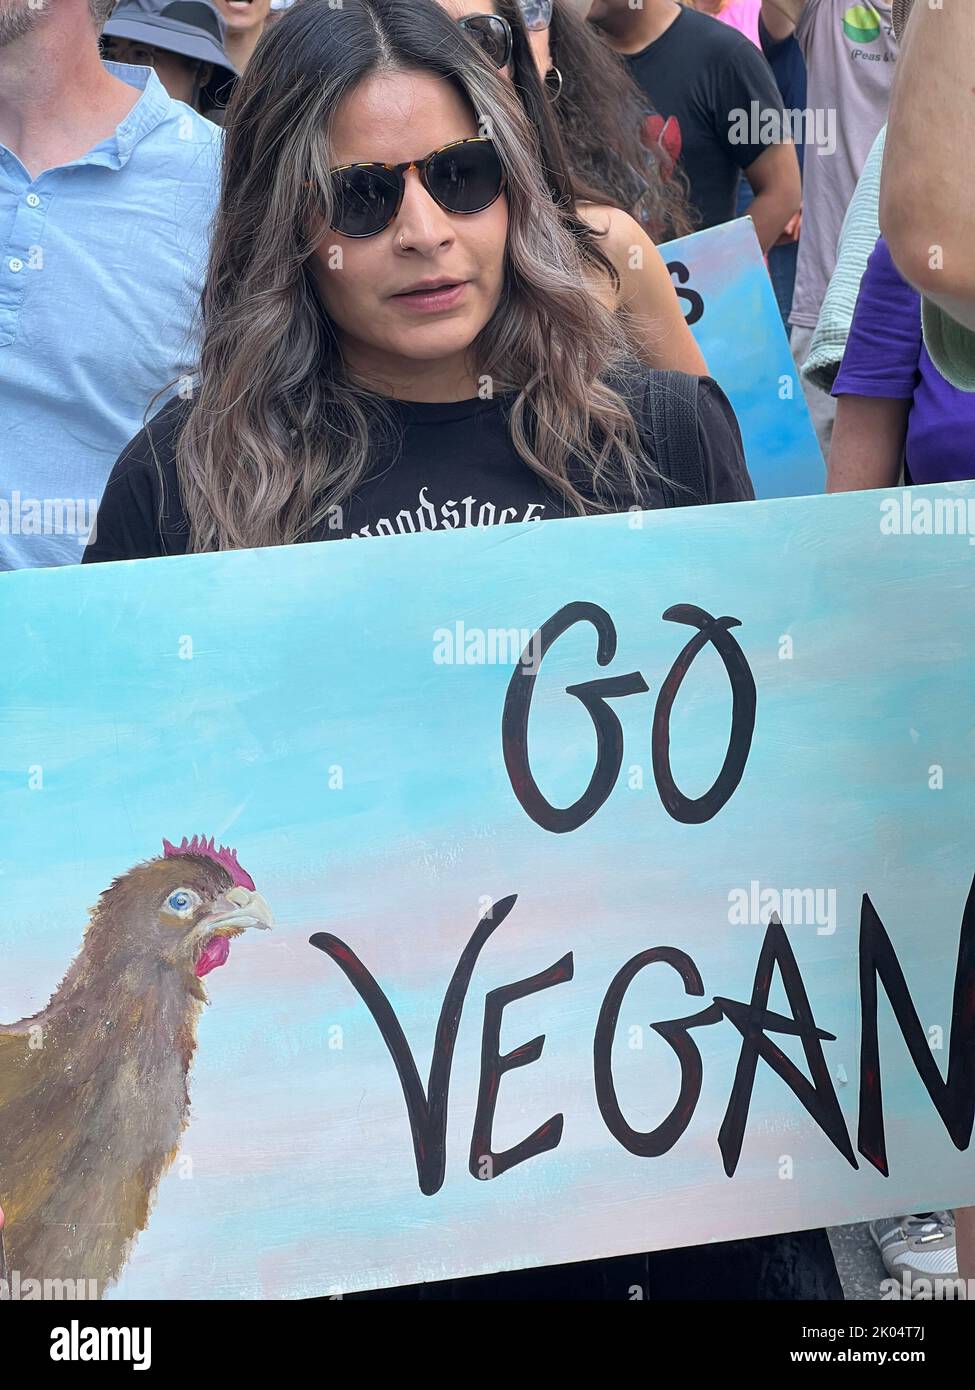 Vegani e altri attivisti si sono schierati per una marcia annuale sui diritti degli animali a Broadway a Manhattan, New York City. Foto Stock